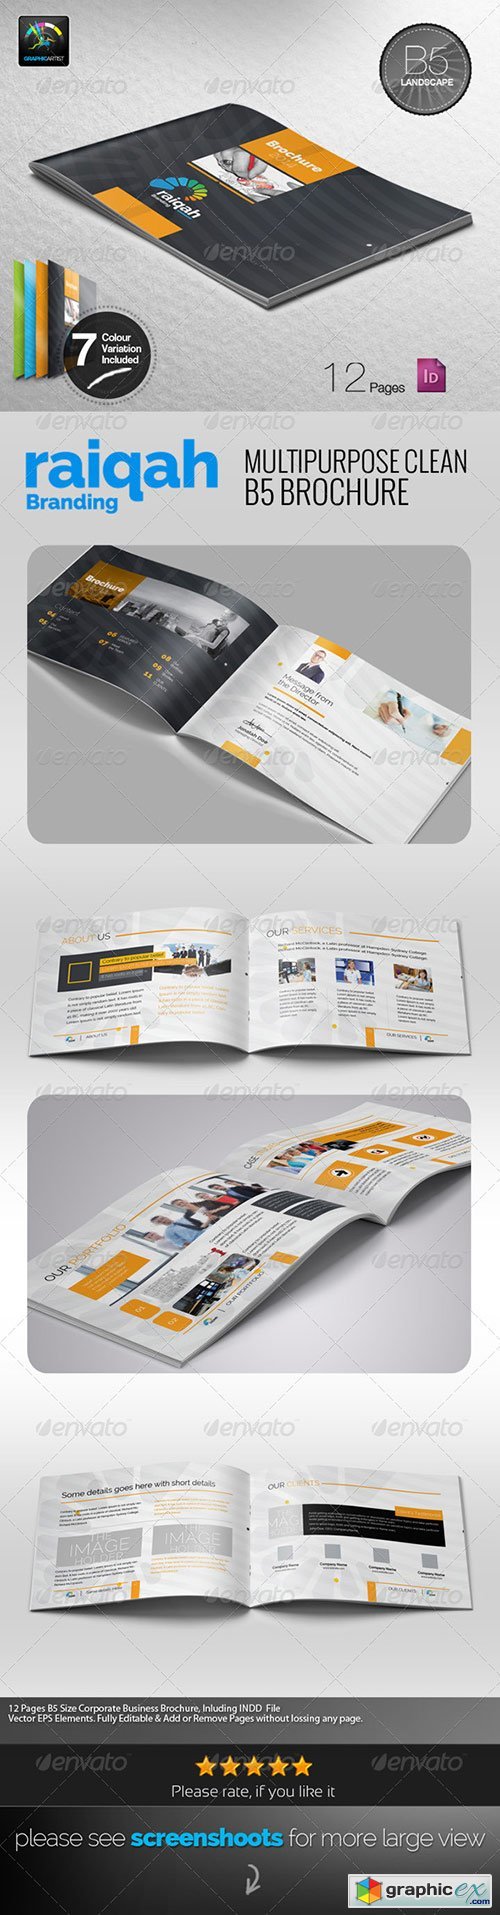 Raiqah Multipurpose B5 Brochure